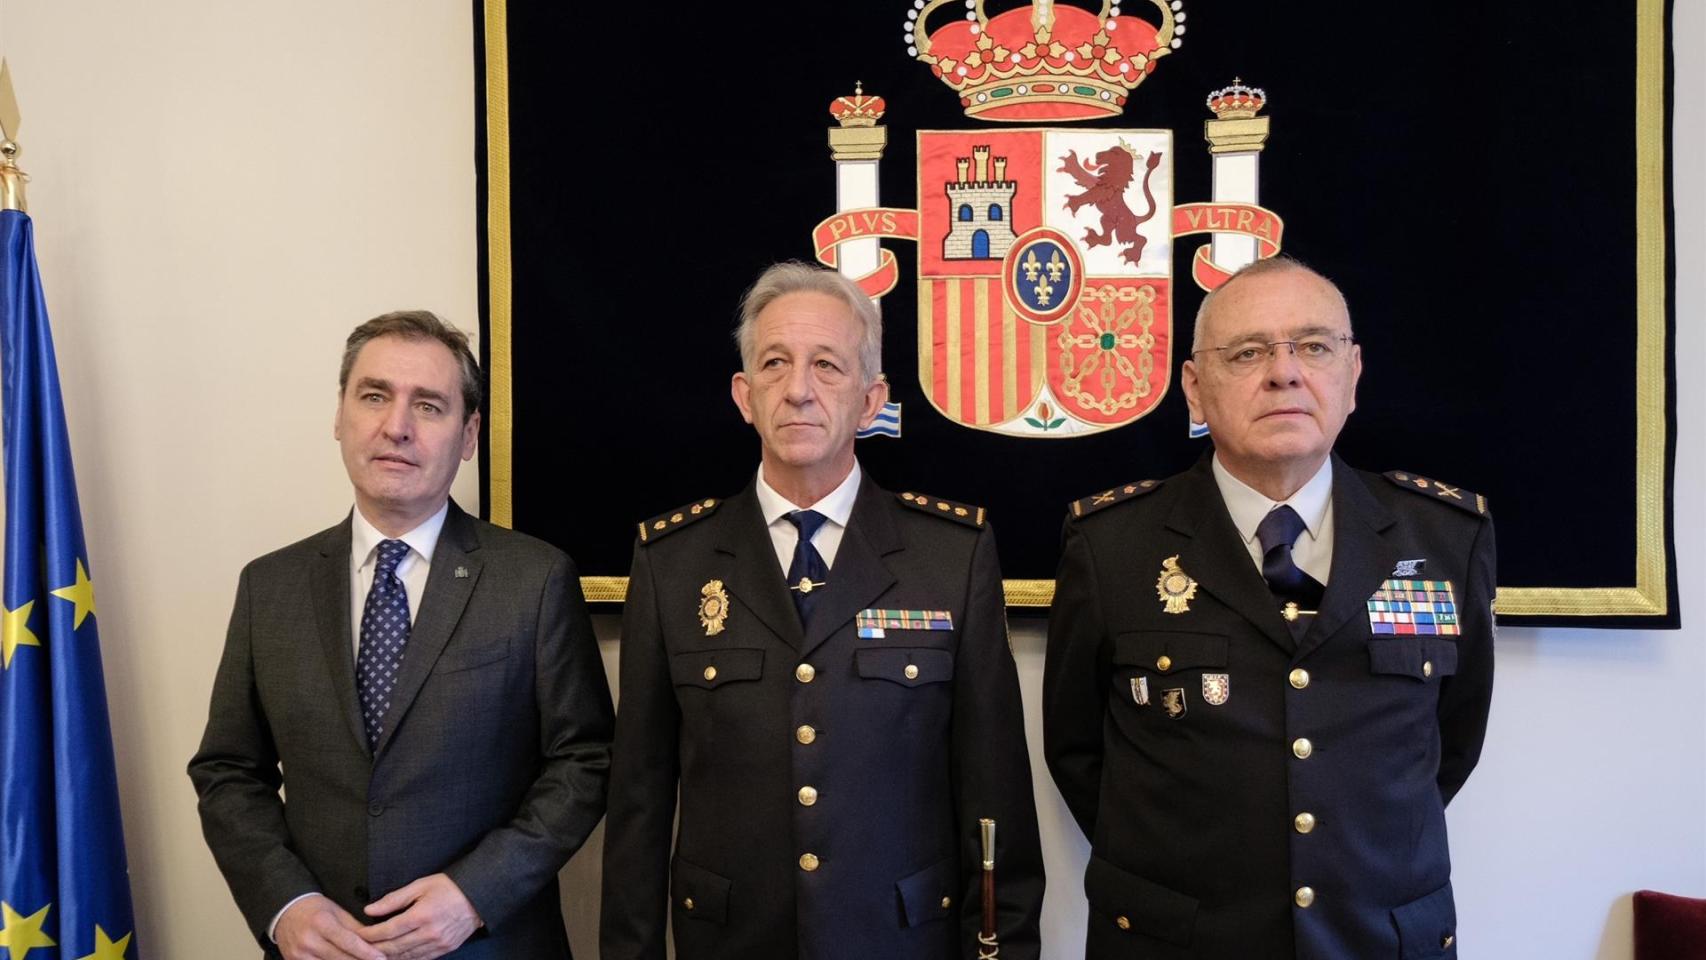 El nuevo comisario provincial de la Policía Nacional de Albacete, Antonio Bueno, junto al delegado del Gobierno en Castilla-La Mancha, Francisco Tierraseca. Foto: Delegación de Gobierno en CLM.